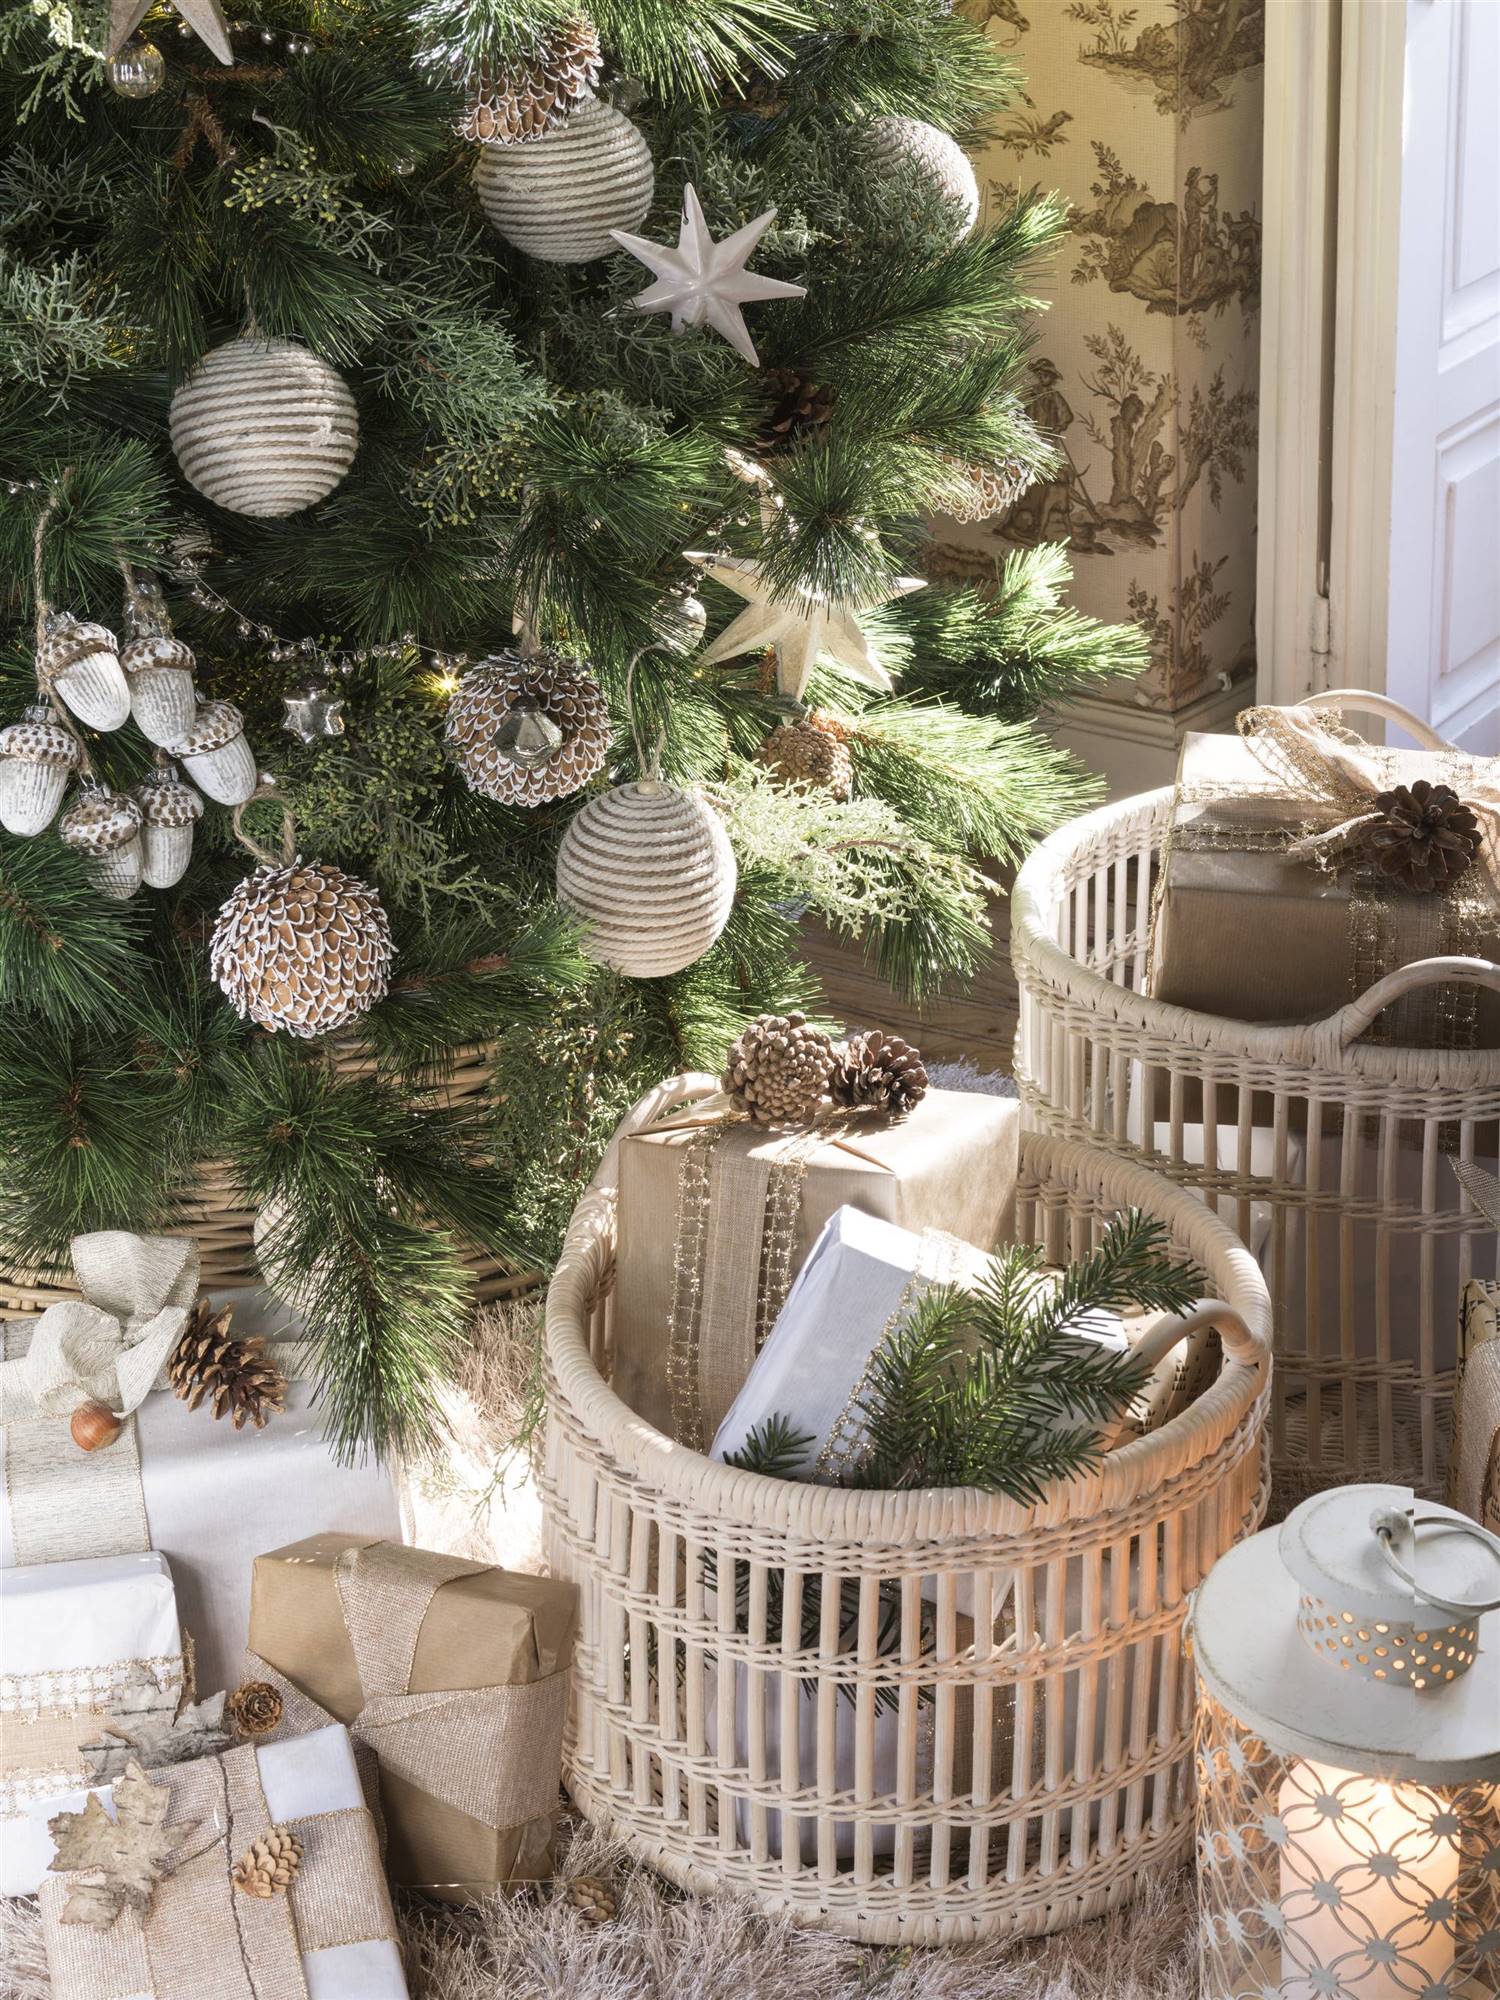 Faldón de un árbol de Navidad con cestos llenos de regalos.